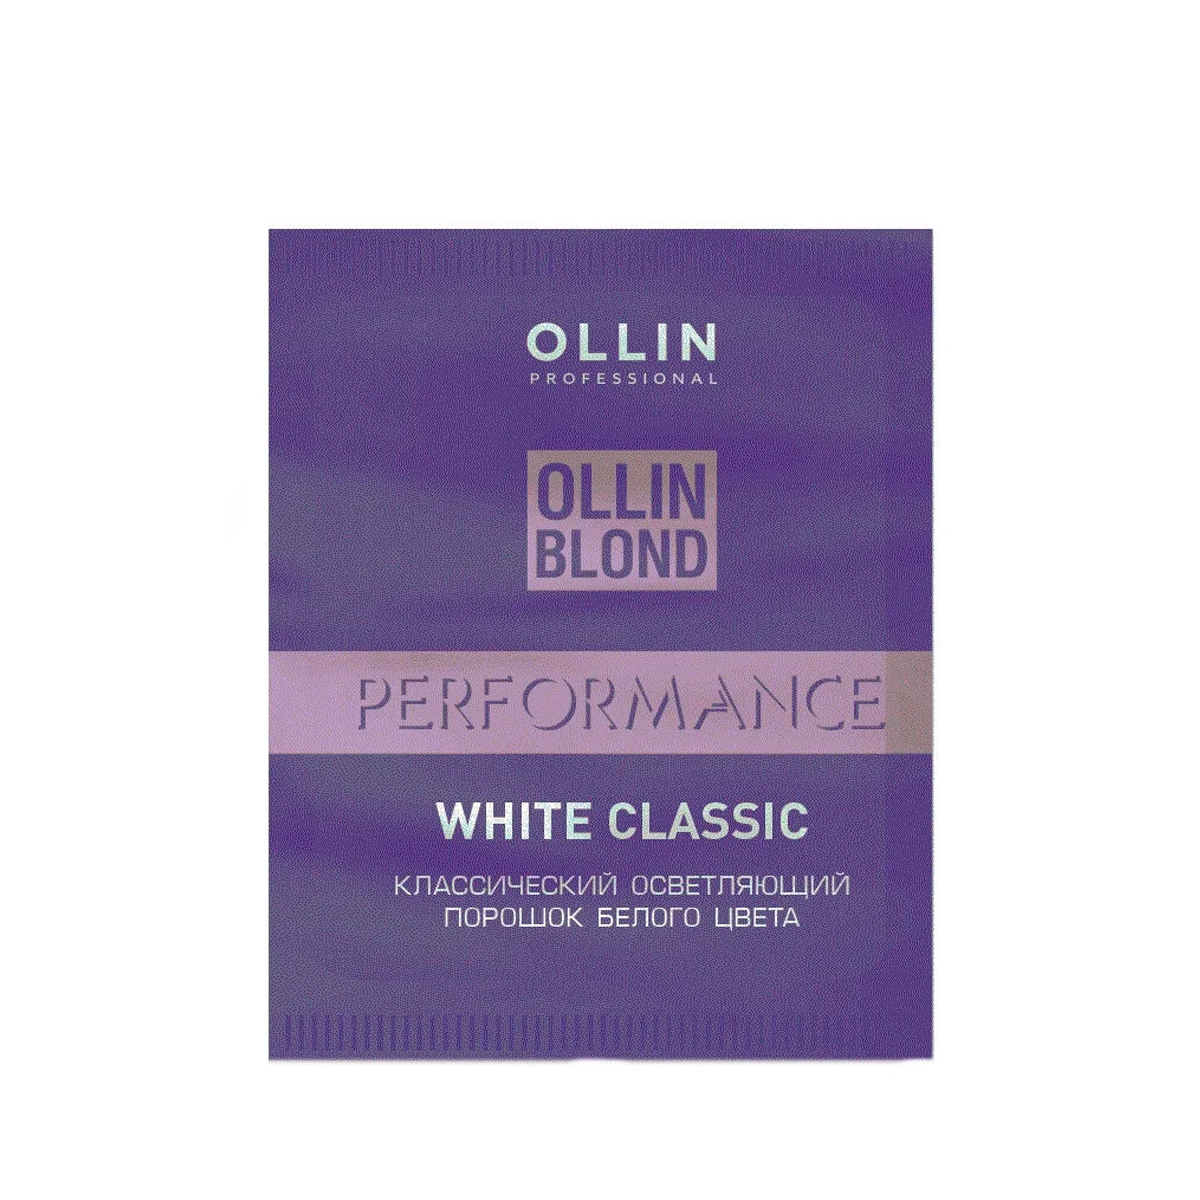 Ollin, Классический осветляющий порошок белого цвета BLOND PERFOMANCE White Classic, 30 г. порошок для осветления be blond белый осветляет на 7 уровней